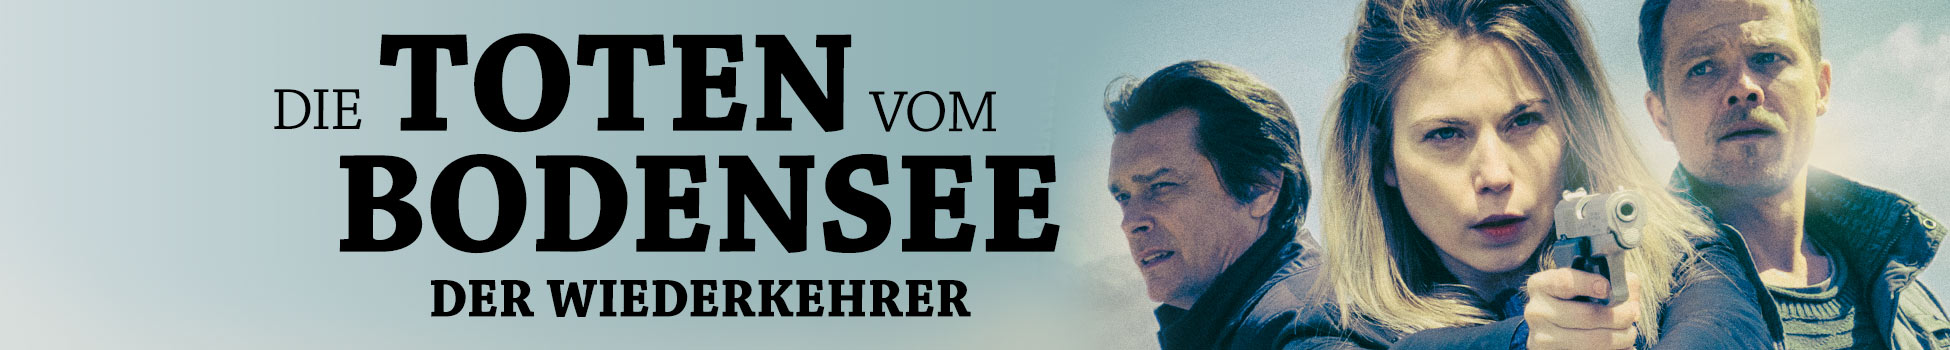 Die Toten vom Bodensee: Der Wiederkehrer - Artwork - Key Visual - Header